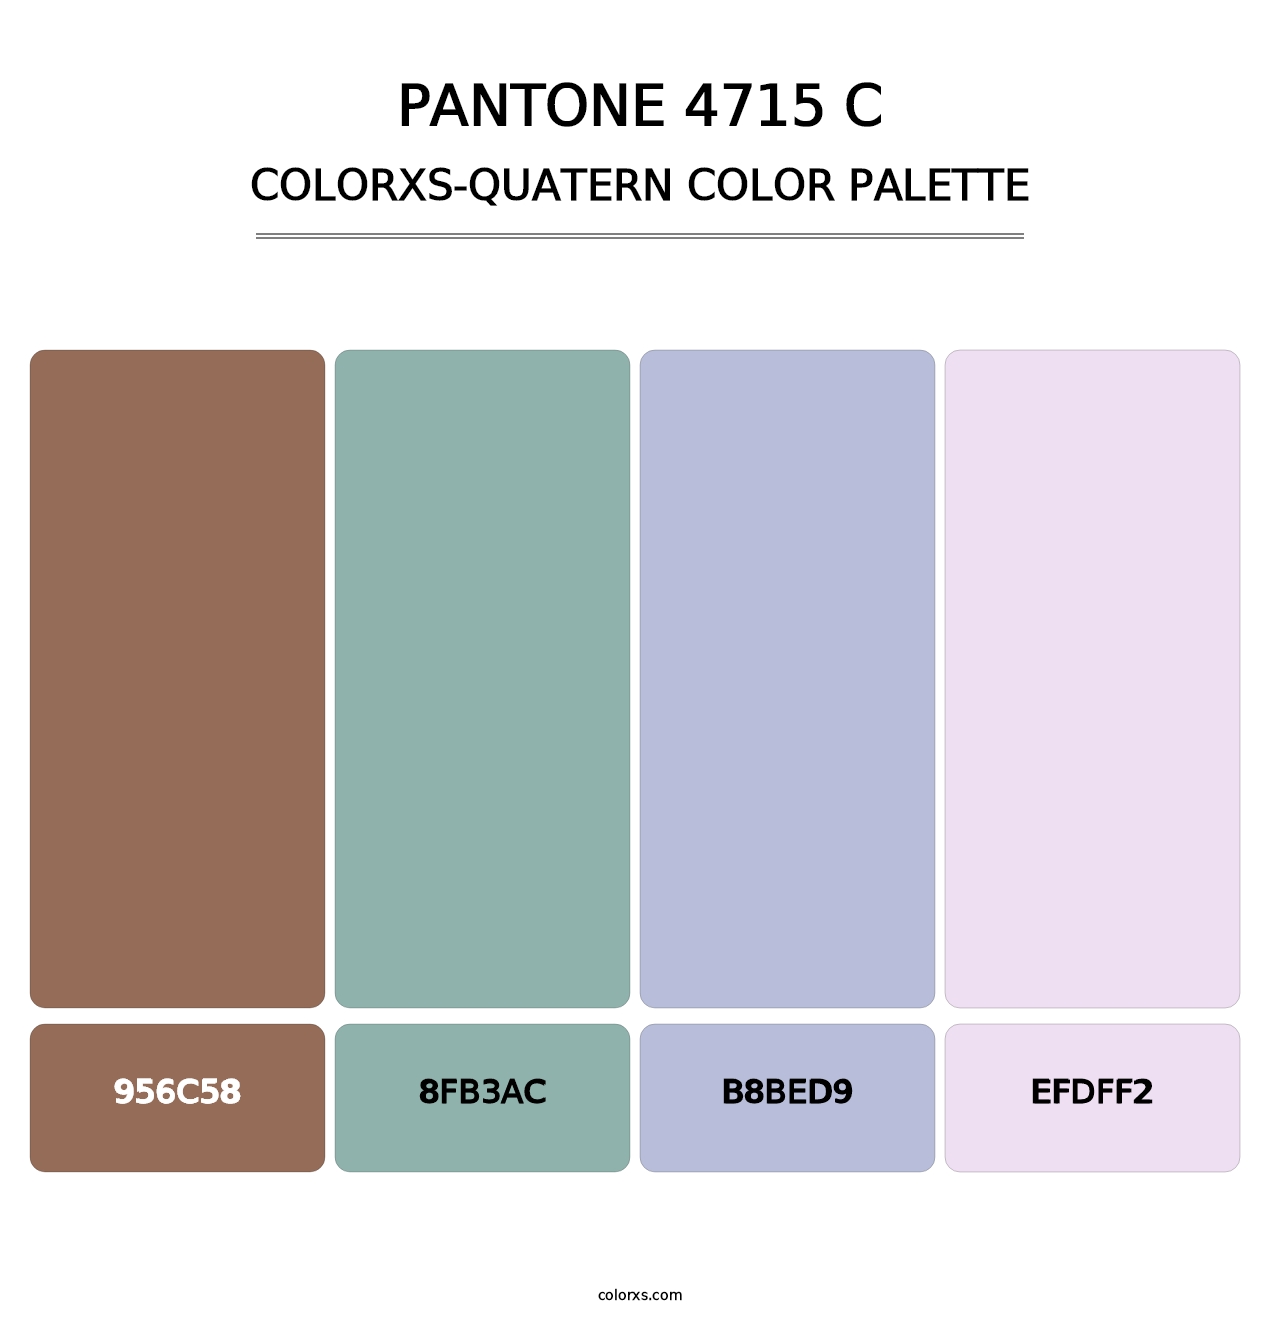 PANTONE 4715 C - Colorxs Quatern Palette